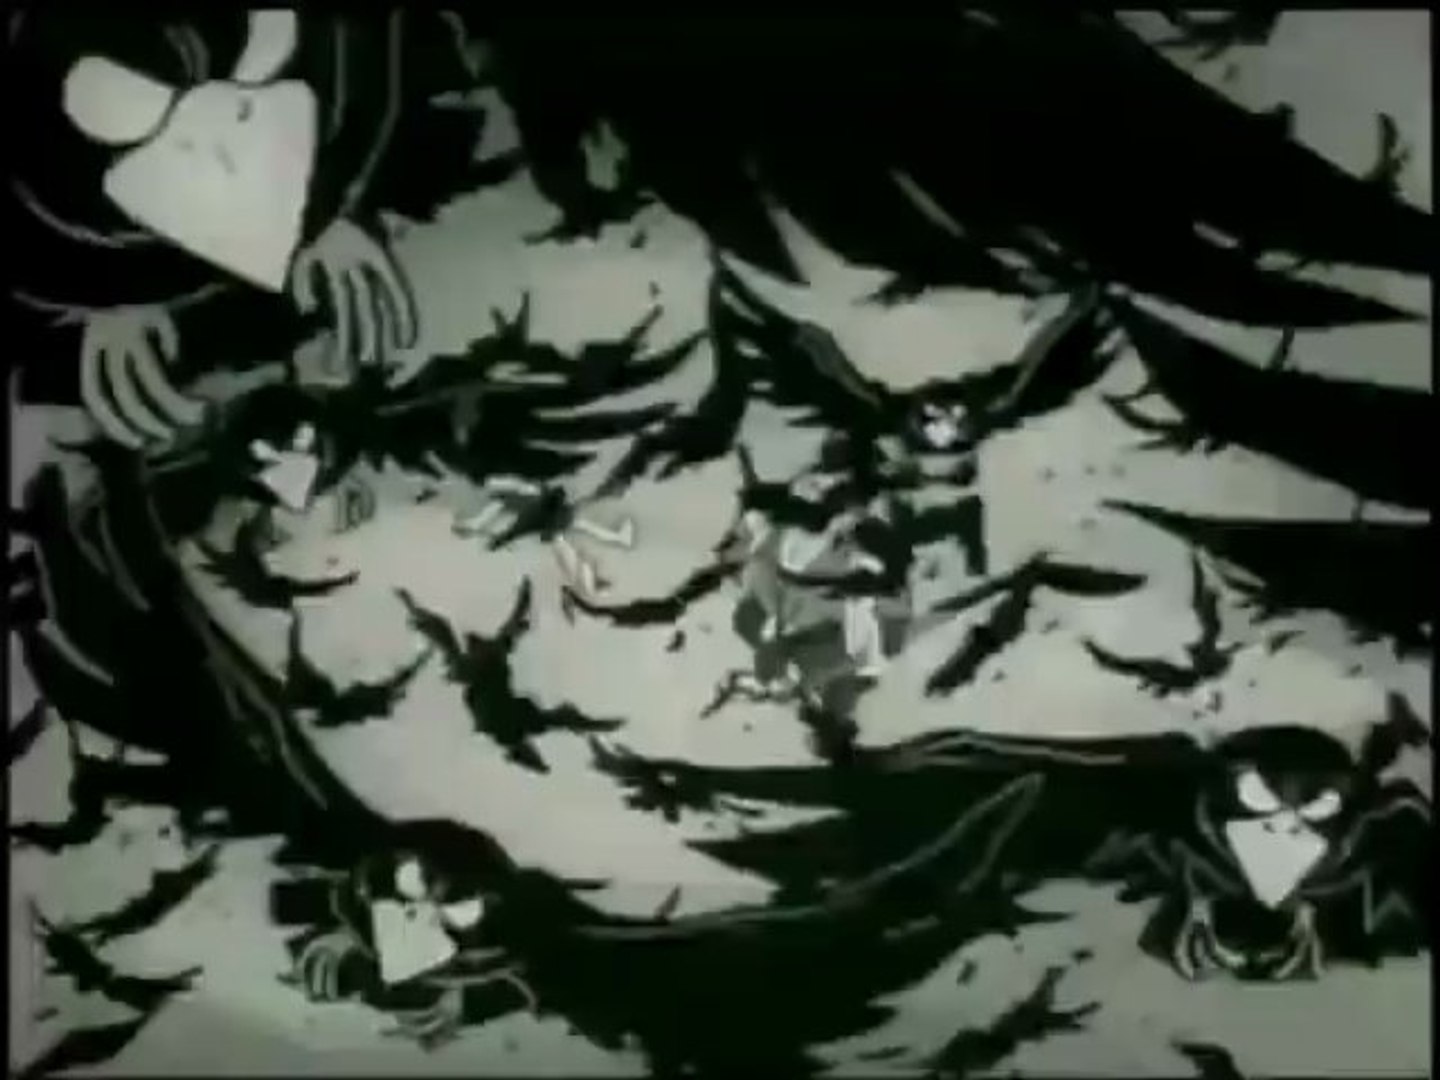 Dororo 15 アニメ どろろと百鬼丸 1969年 第15話 いないいない村 白黒 Video Dailymotion